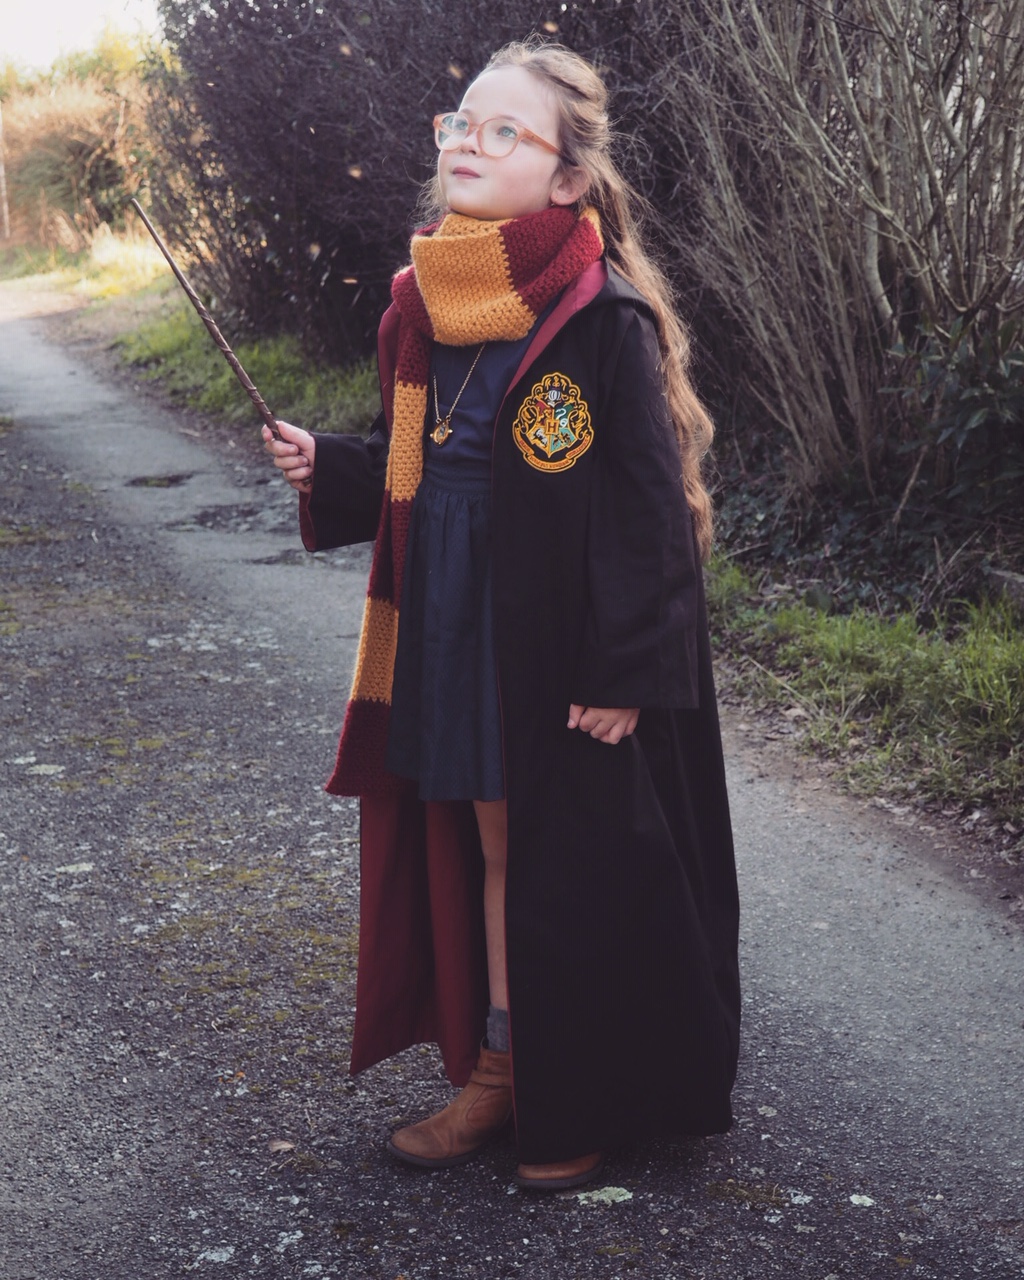 Harry Potter - Écharpe Gryffondor tricotée jaune-rouge